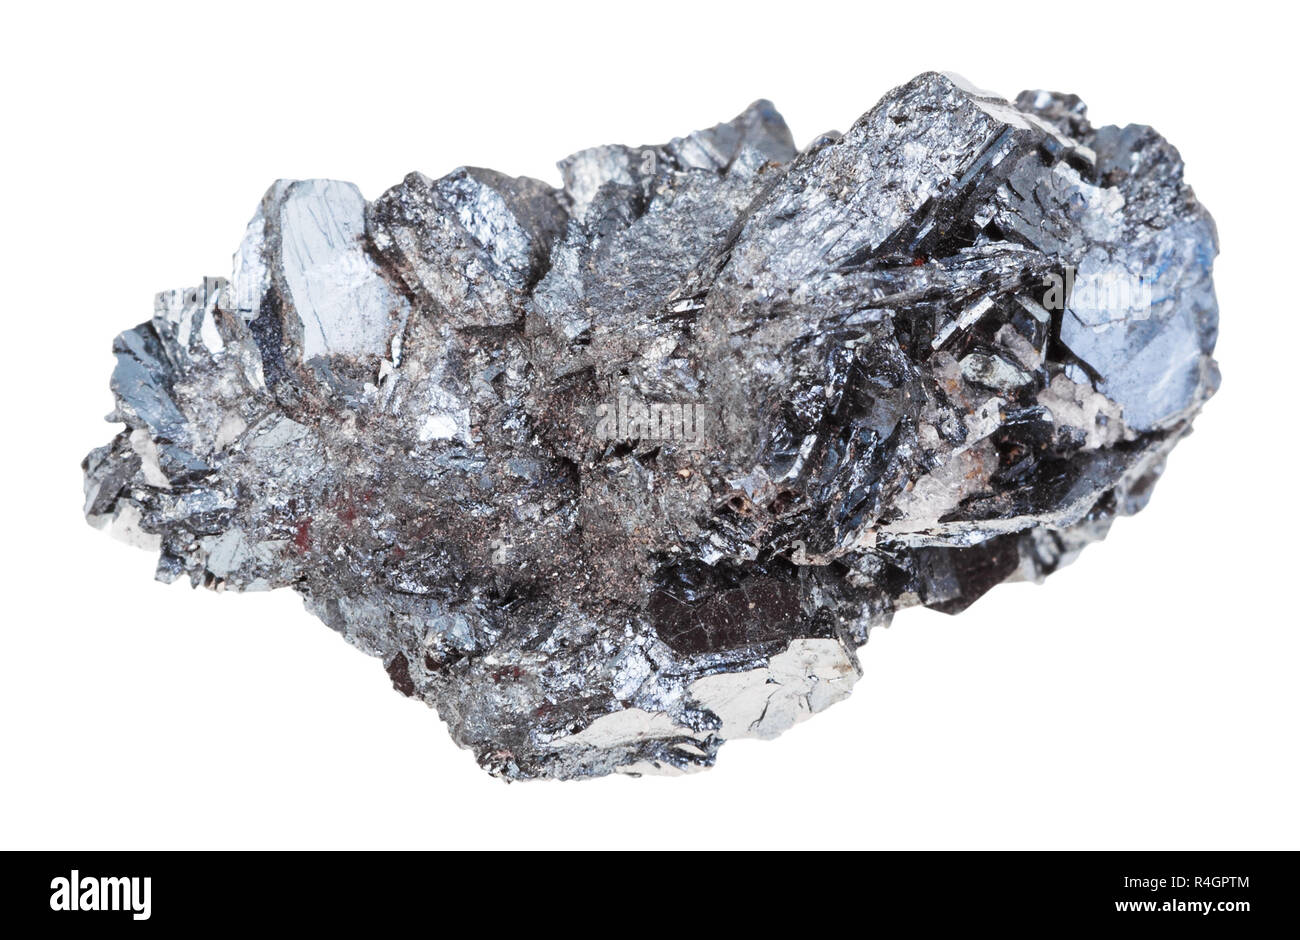 specimen of hematite (iron ore) stone isolated Stock Photo